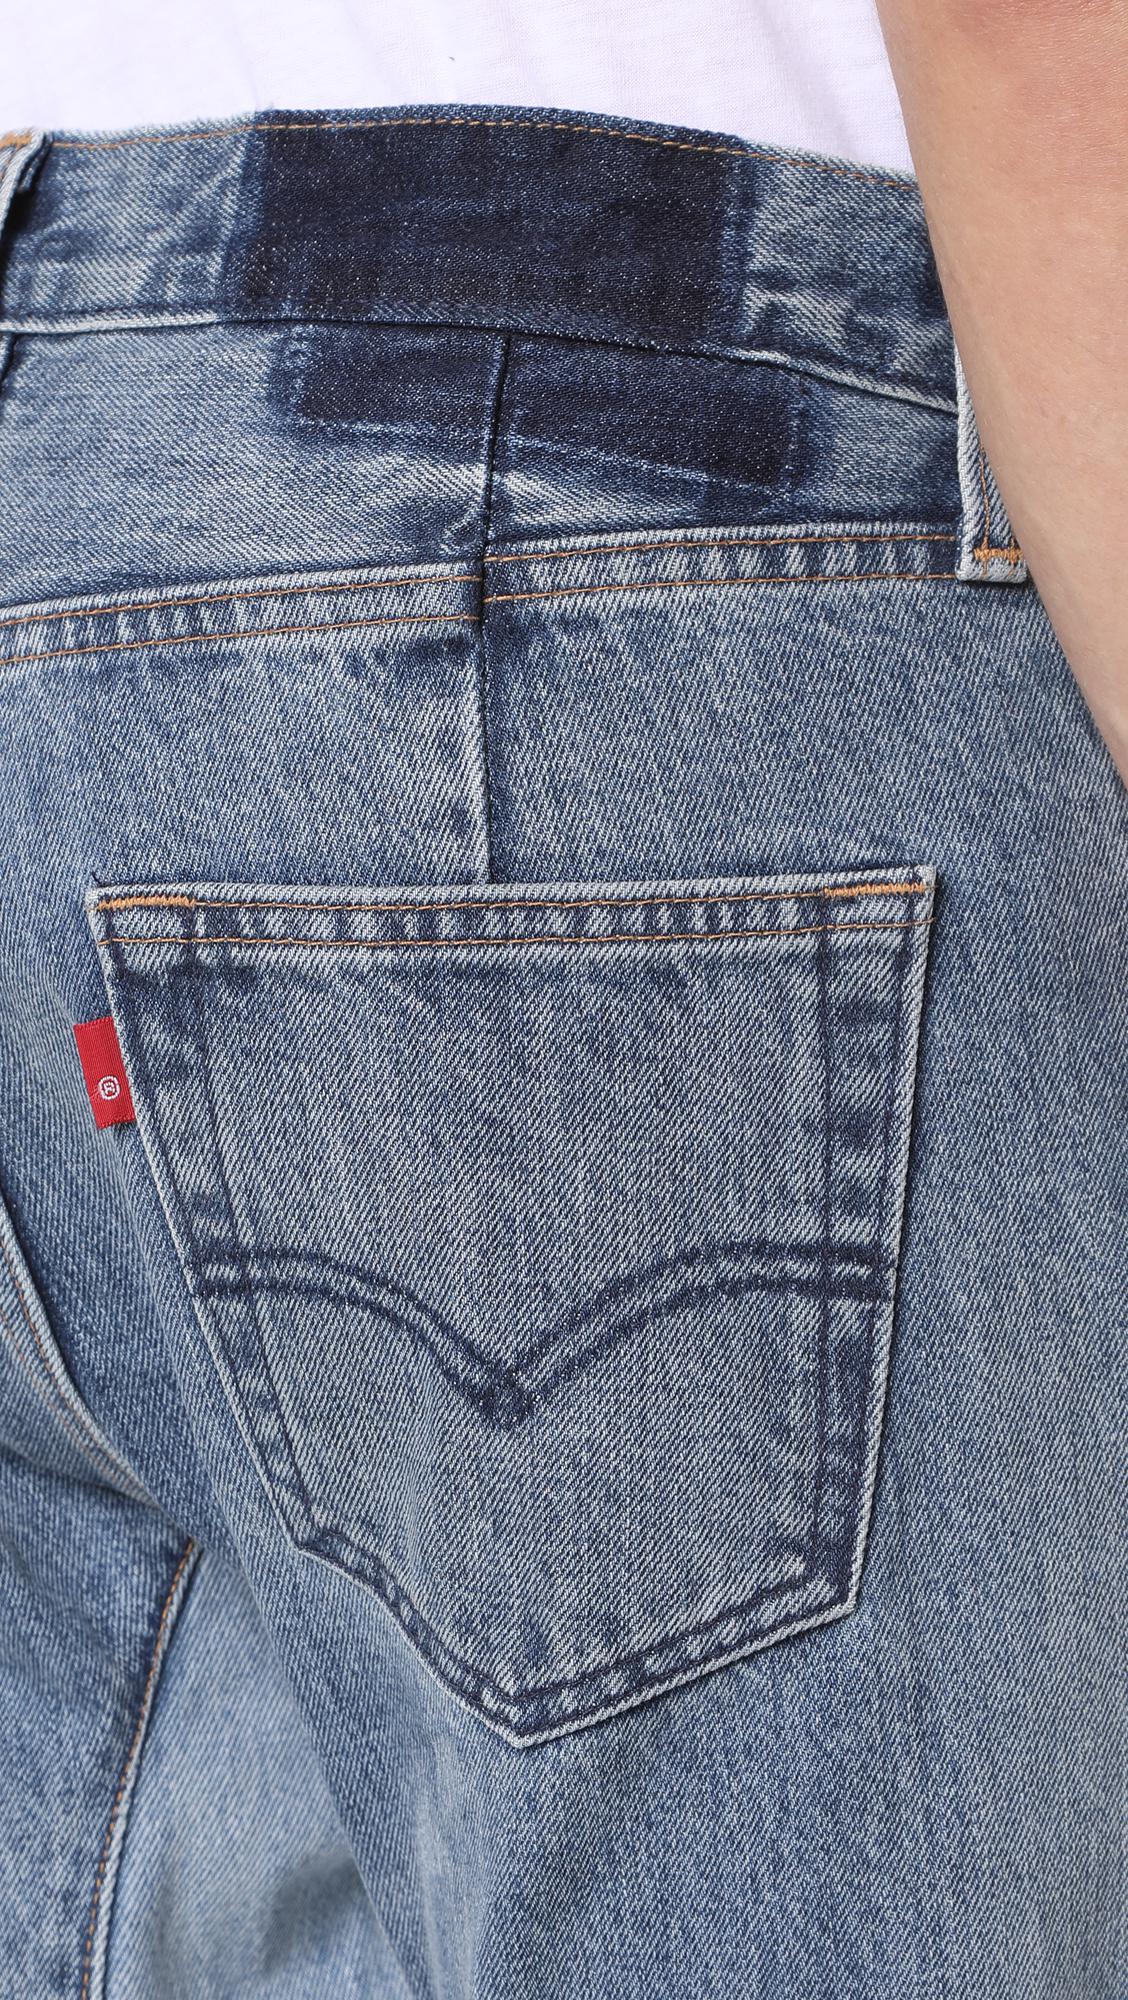 Levi's Custom Gusset Tapered Denim Jeans in Indigo (Blue) for Men - Lyst